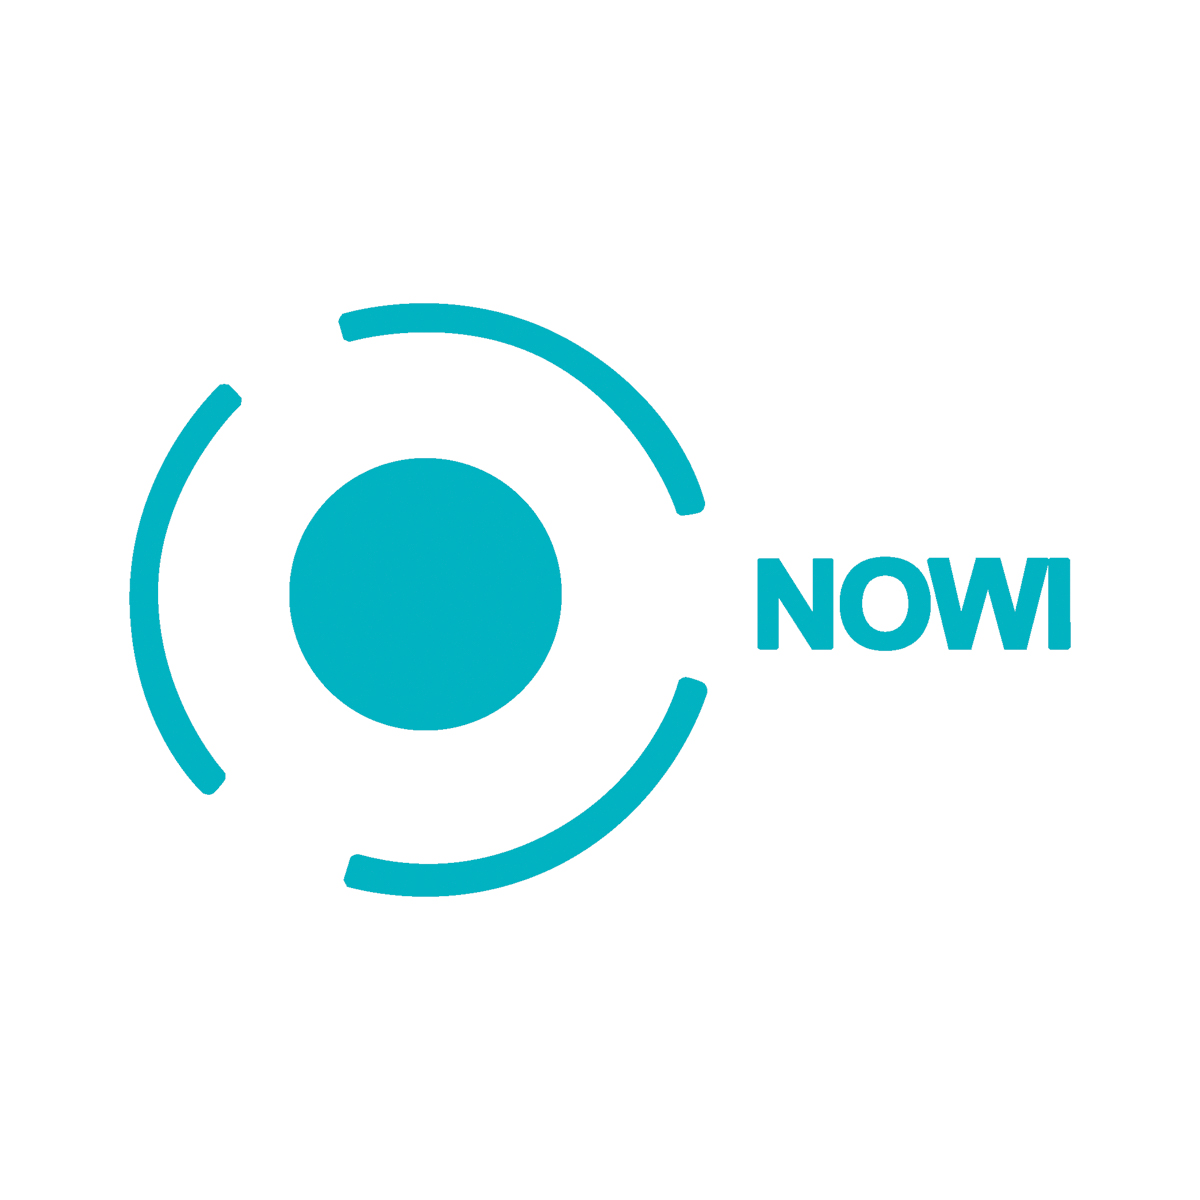 Nowi's logo